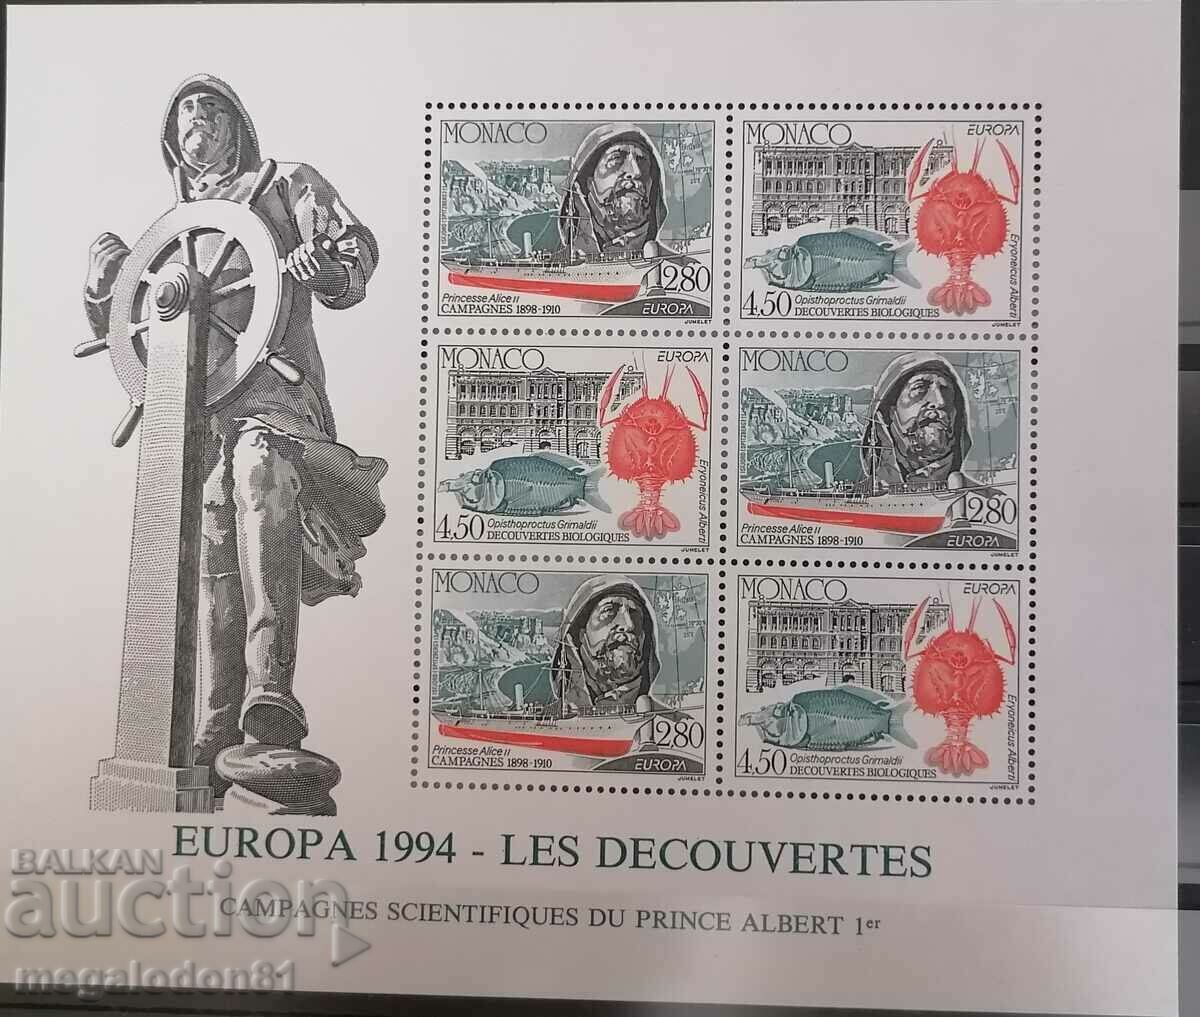 Μονακό - Ευρώπη 1984, βιοποικιλότητα